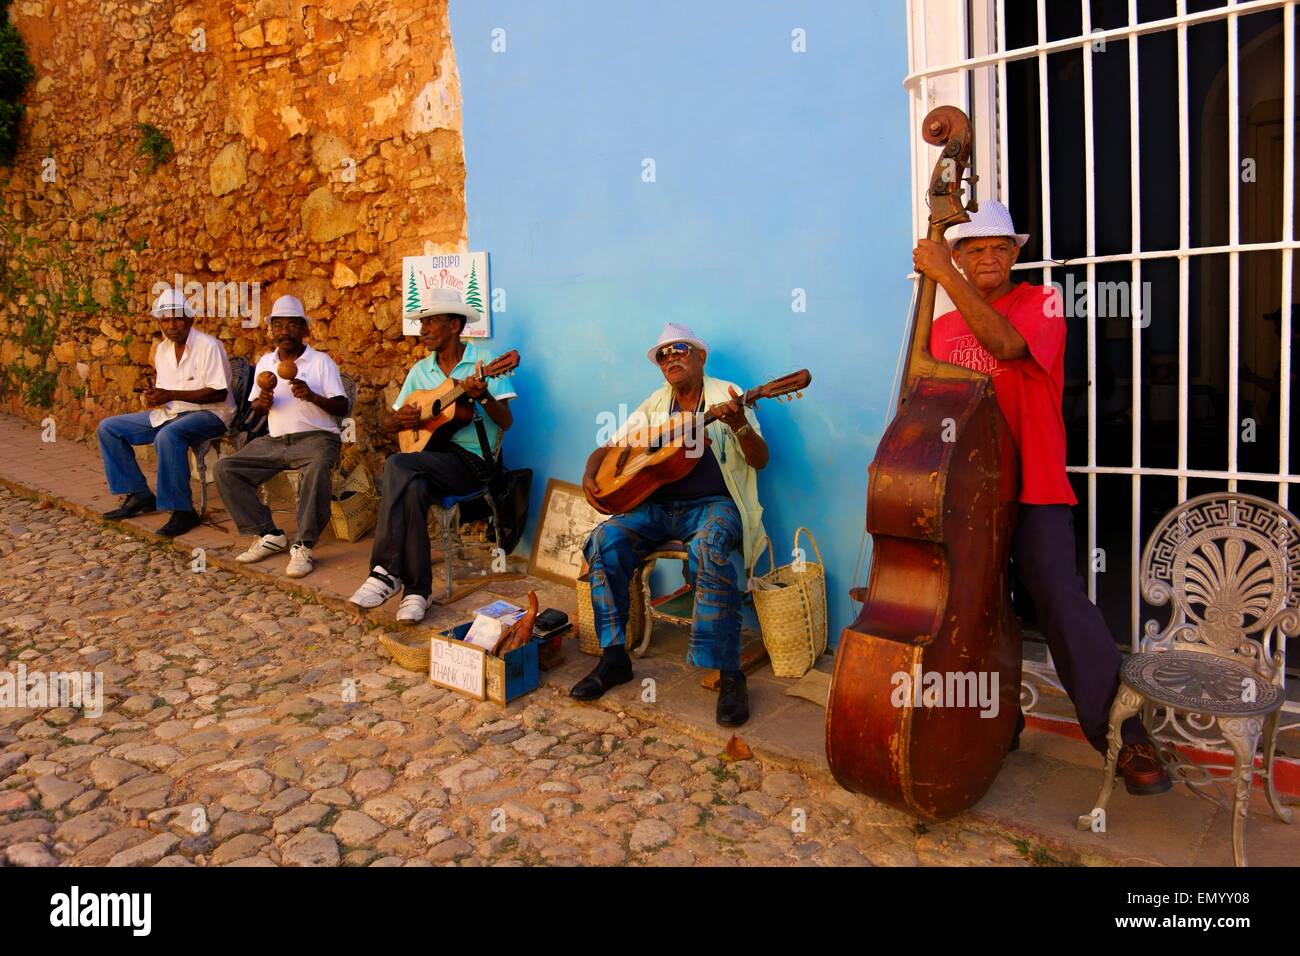 Cubain hommes musiciens de rue jouer la musique cubaine les rues de Trinidad, Cuba Banque D'Images